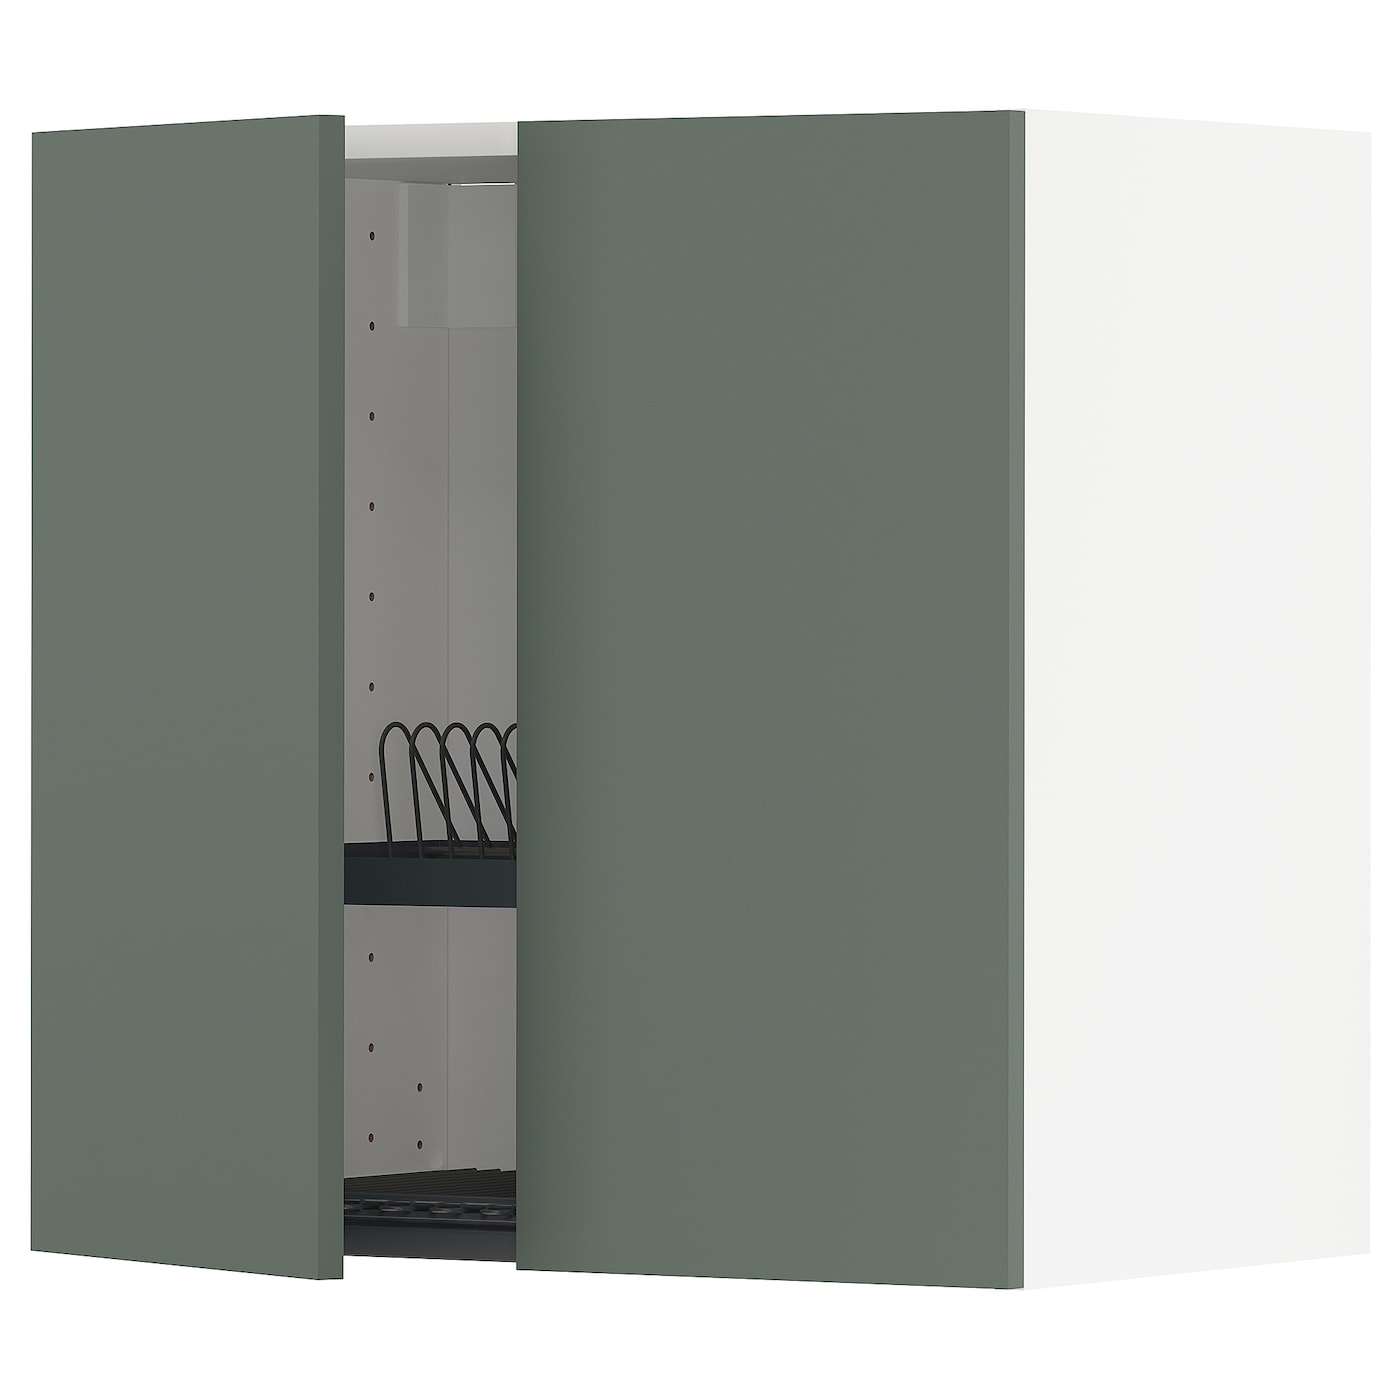 Навесной шкаф с сушилкой - METOD IKEA/ МЕТОД ИКЕА, 60х60 см, темно-зеленый/белый